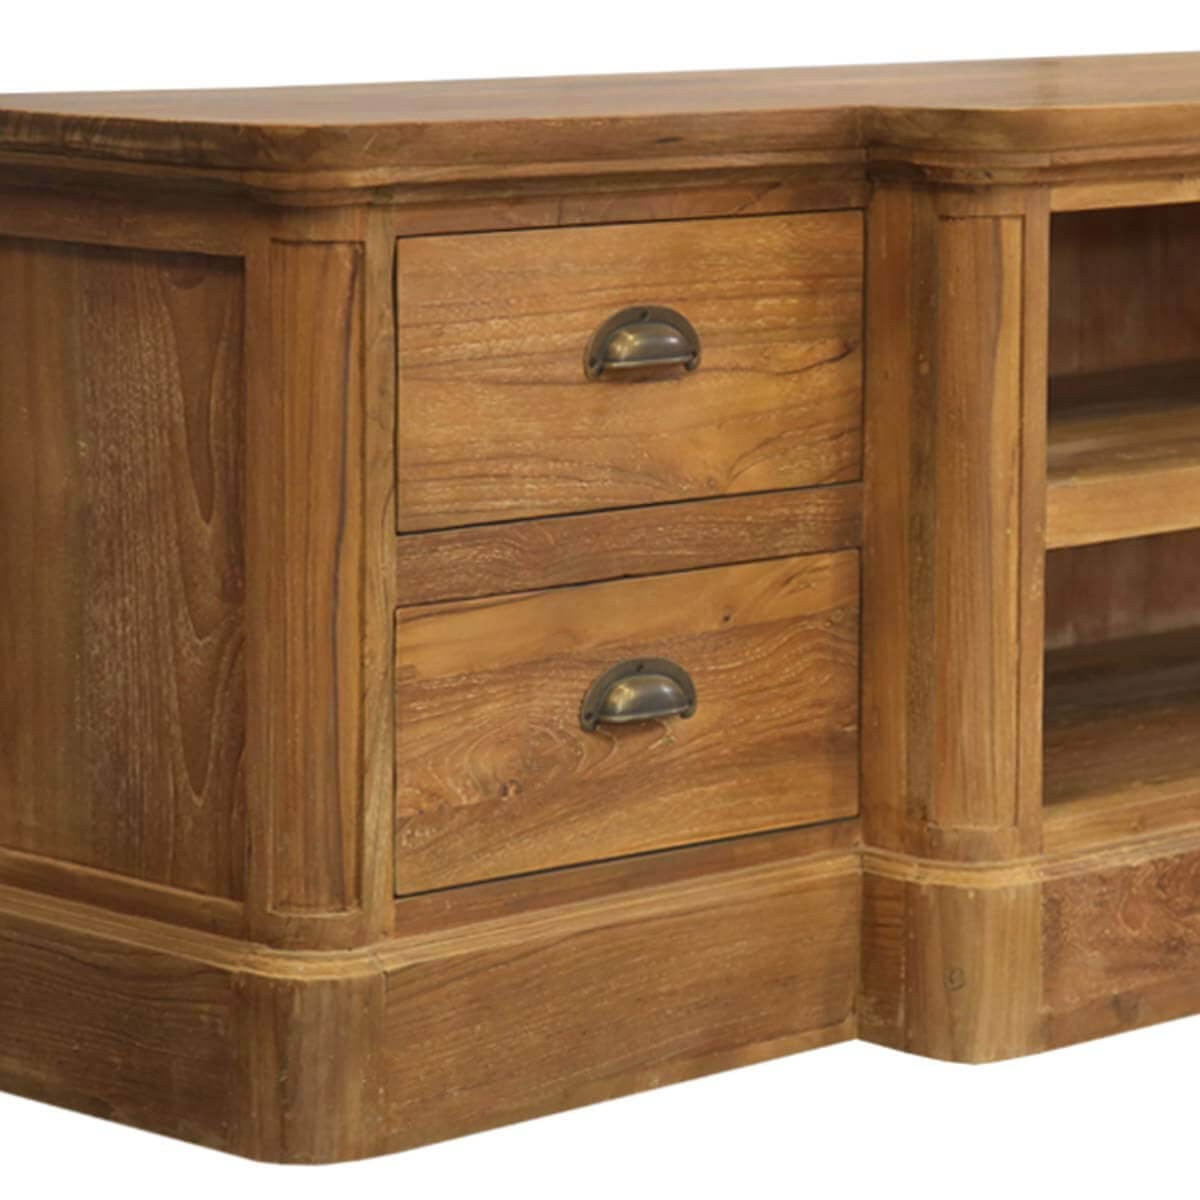 Bovey modern teak wood open shelf 4 drawer tv stand